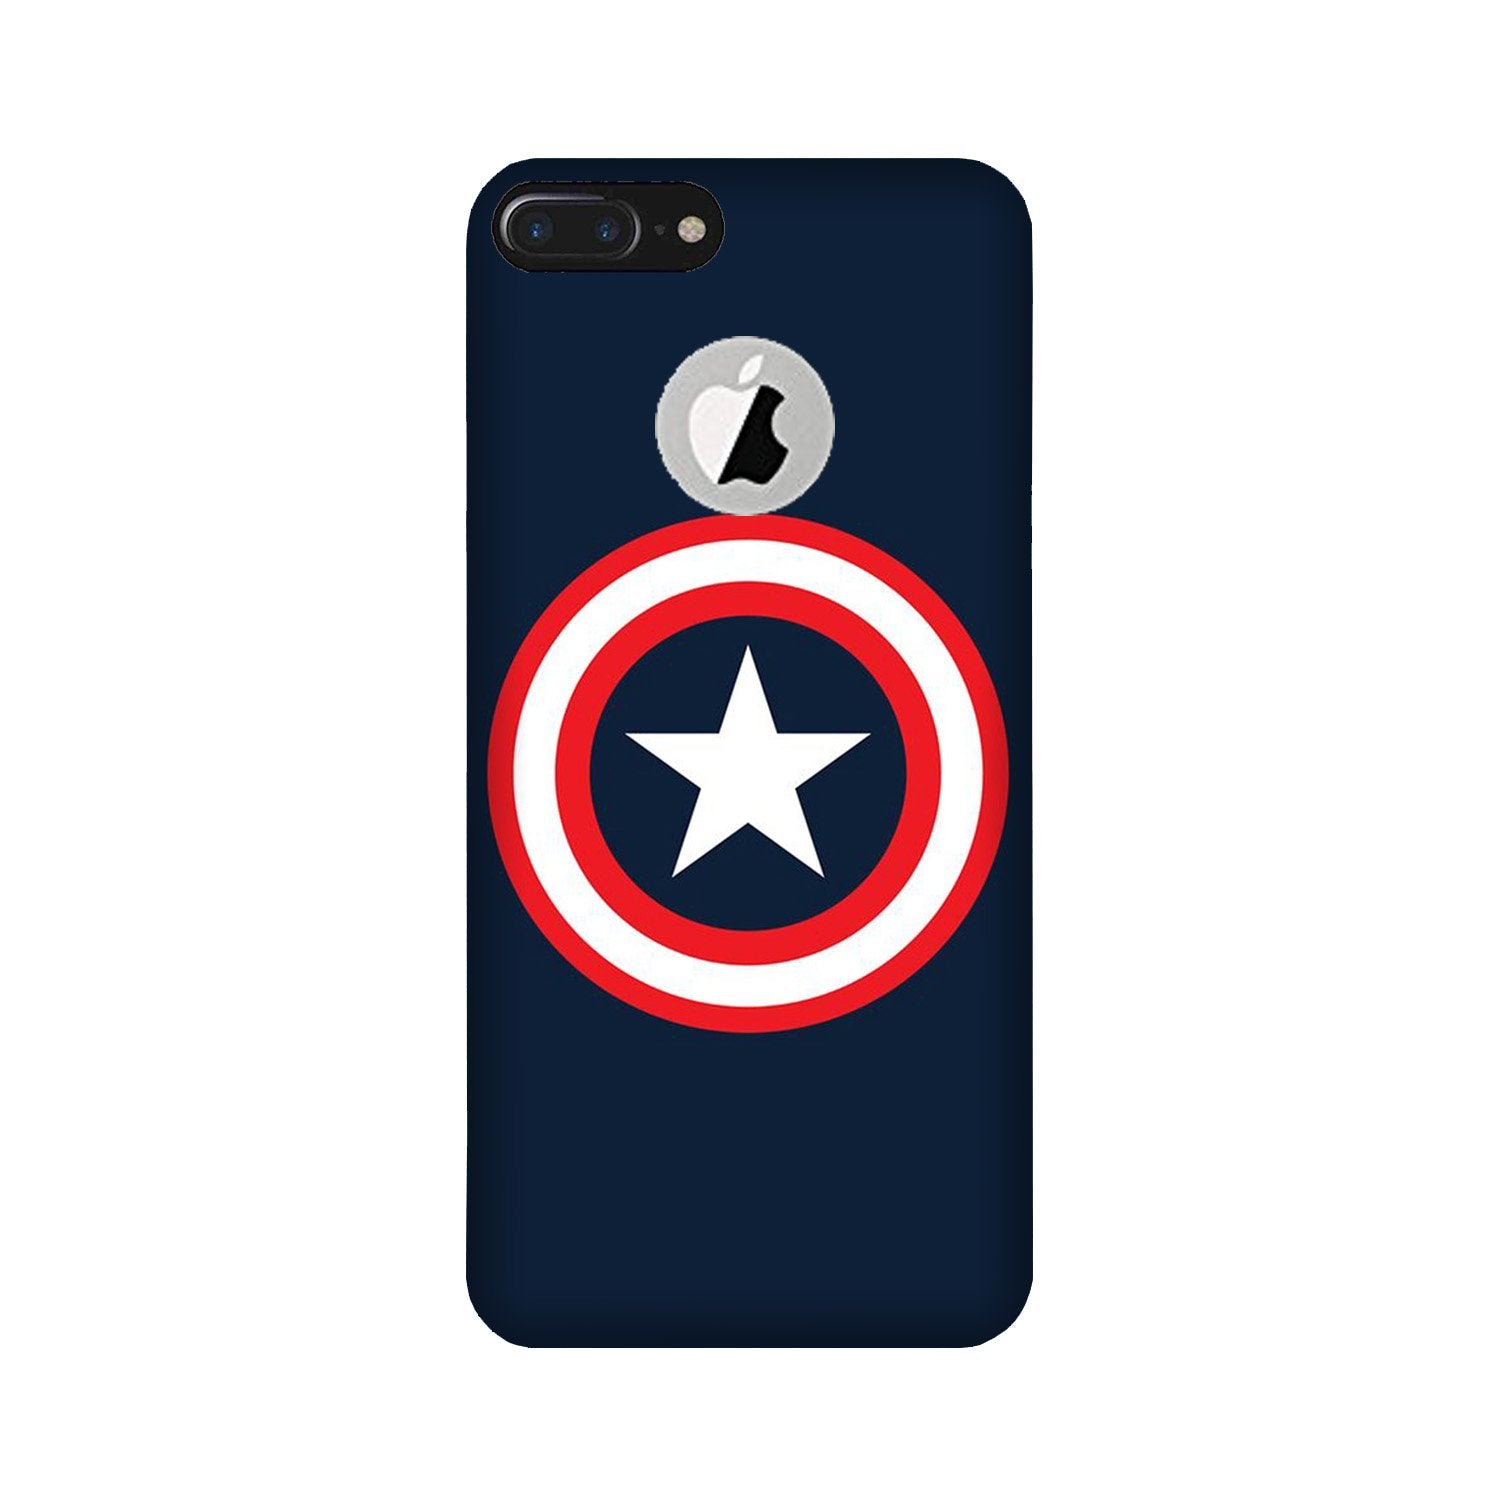 Captain America Case for iPhone 7 Plus logo cut